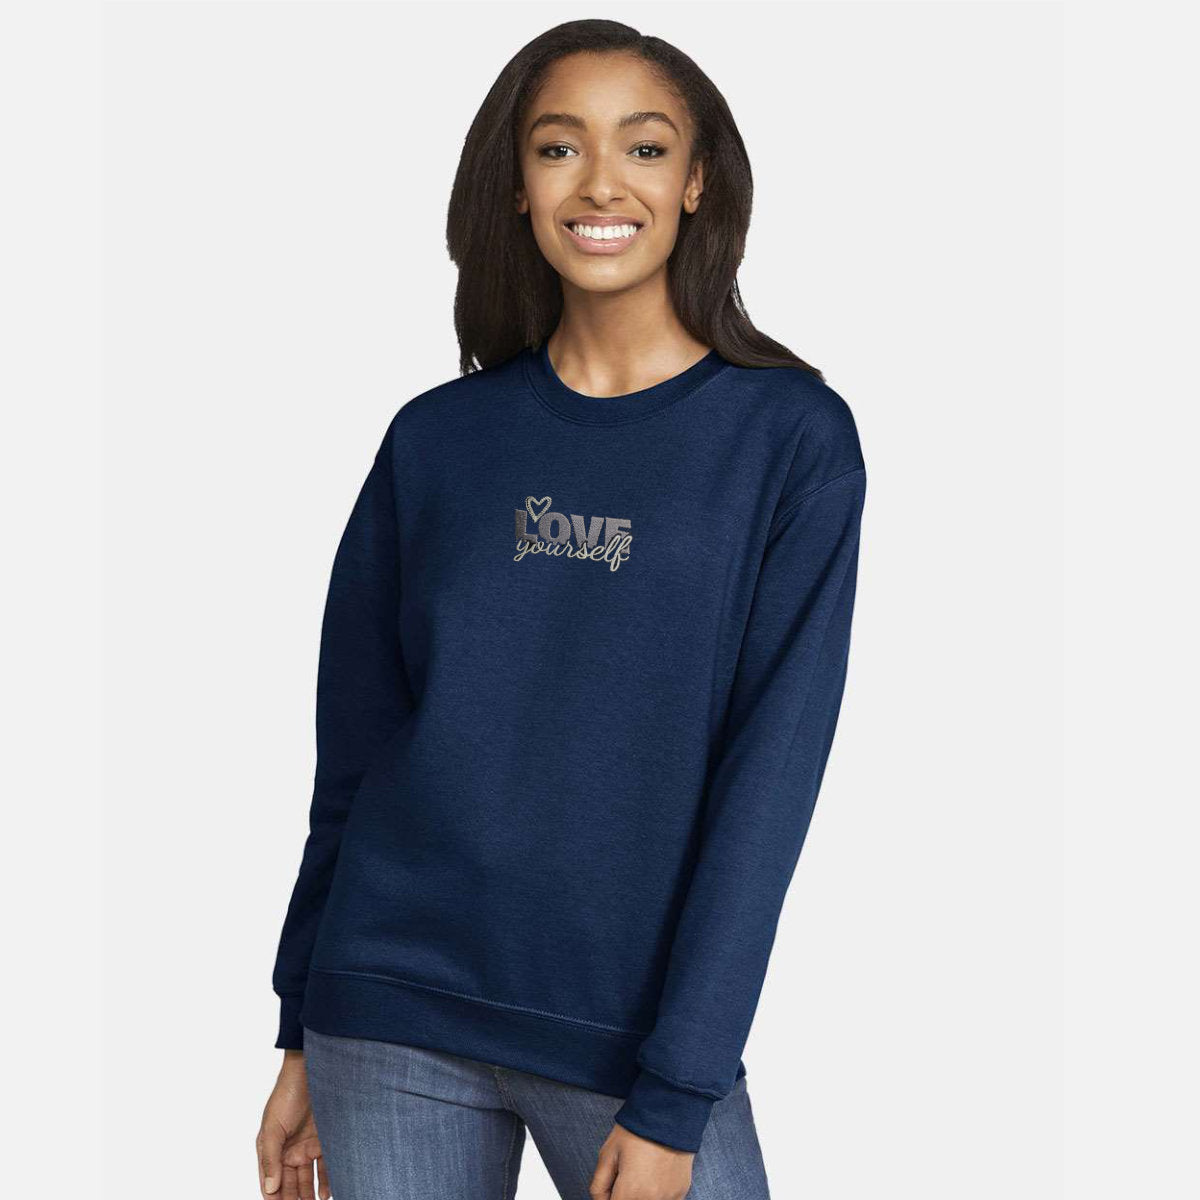 Embroidered Sweatshirt | Love Yourself | Drop Shoulder Sweatshirt | Sand | Navy